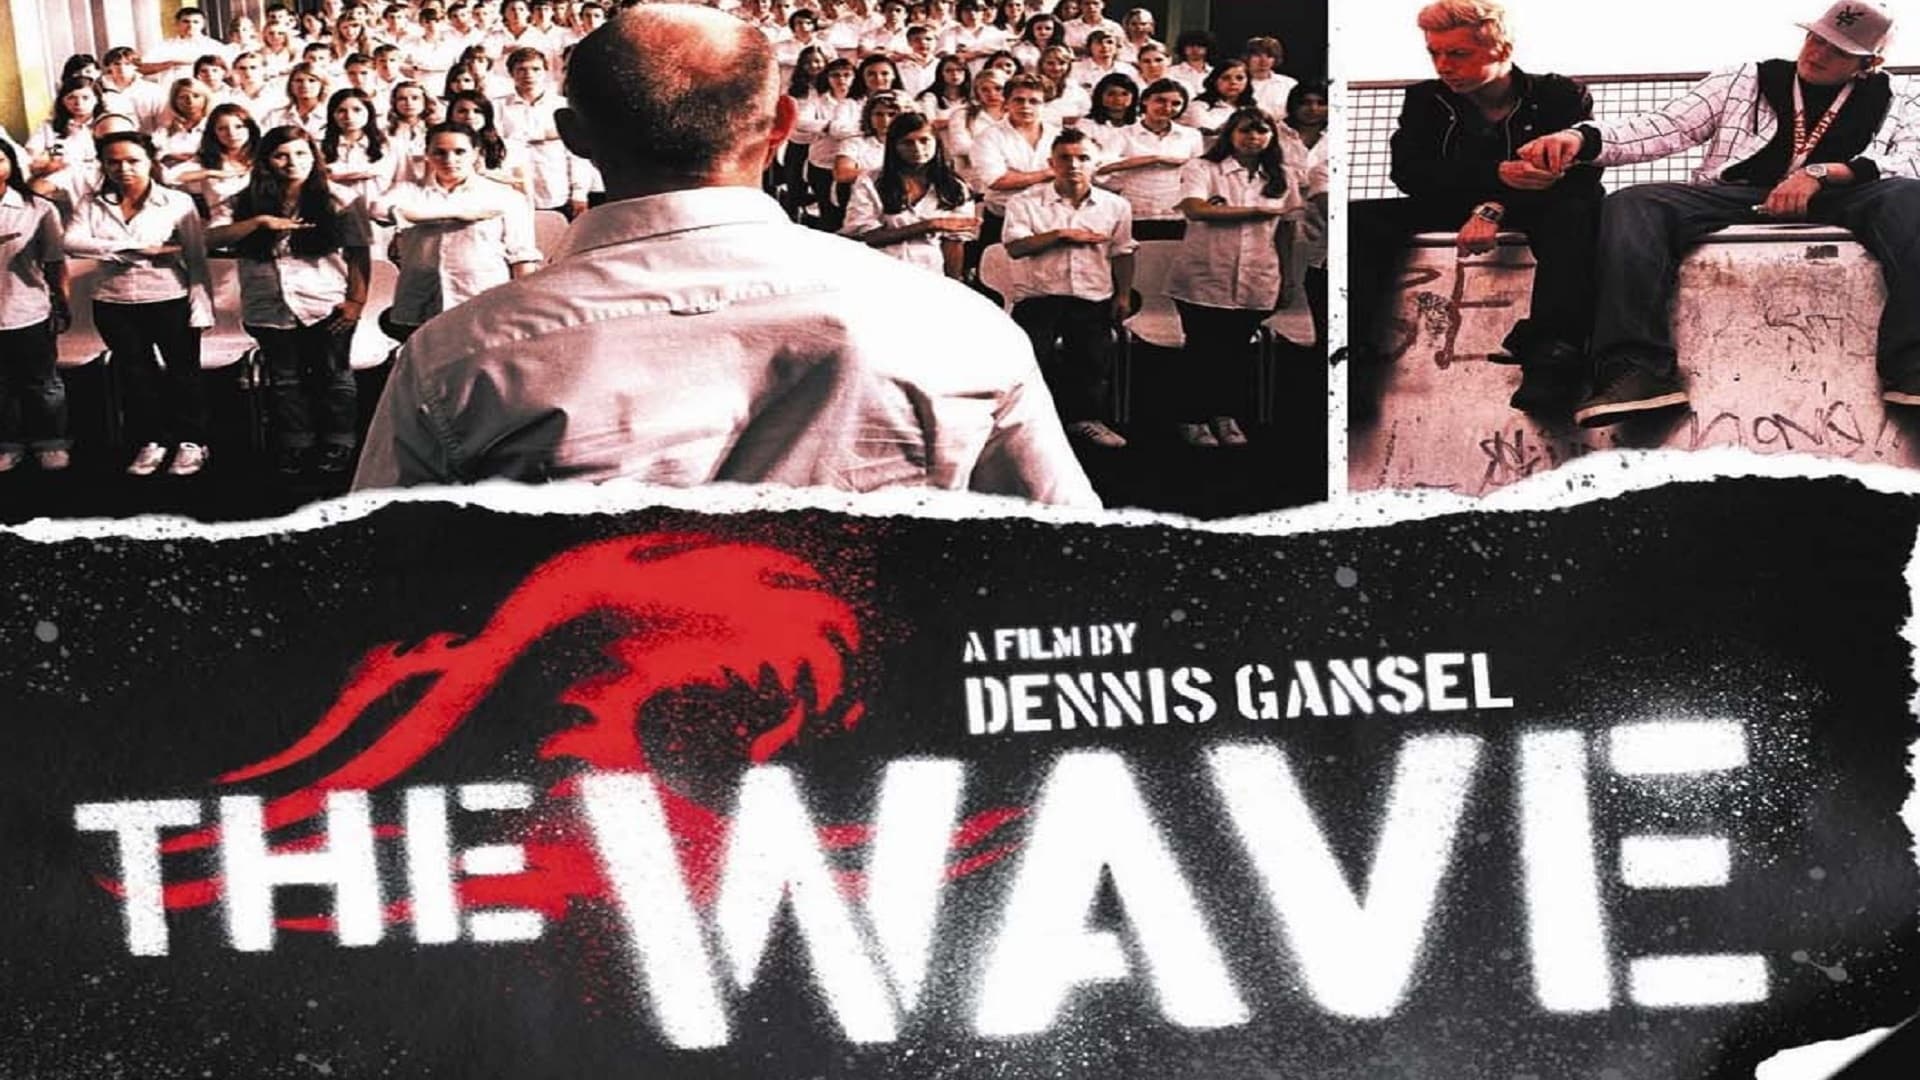 Die Welle (2008)